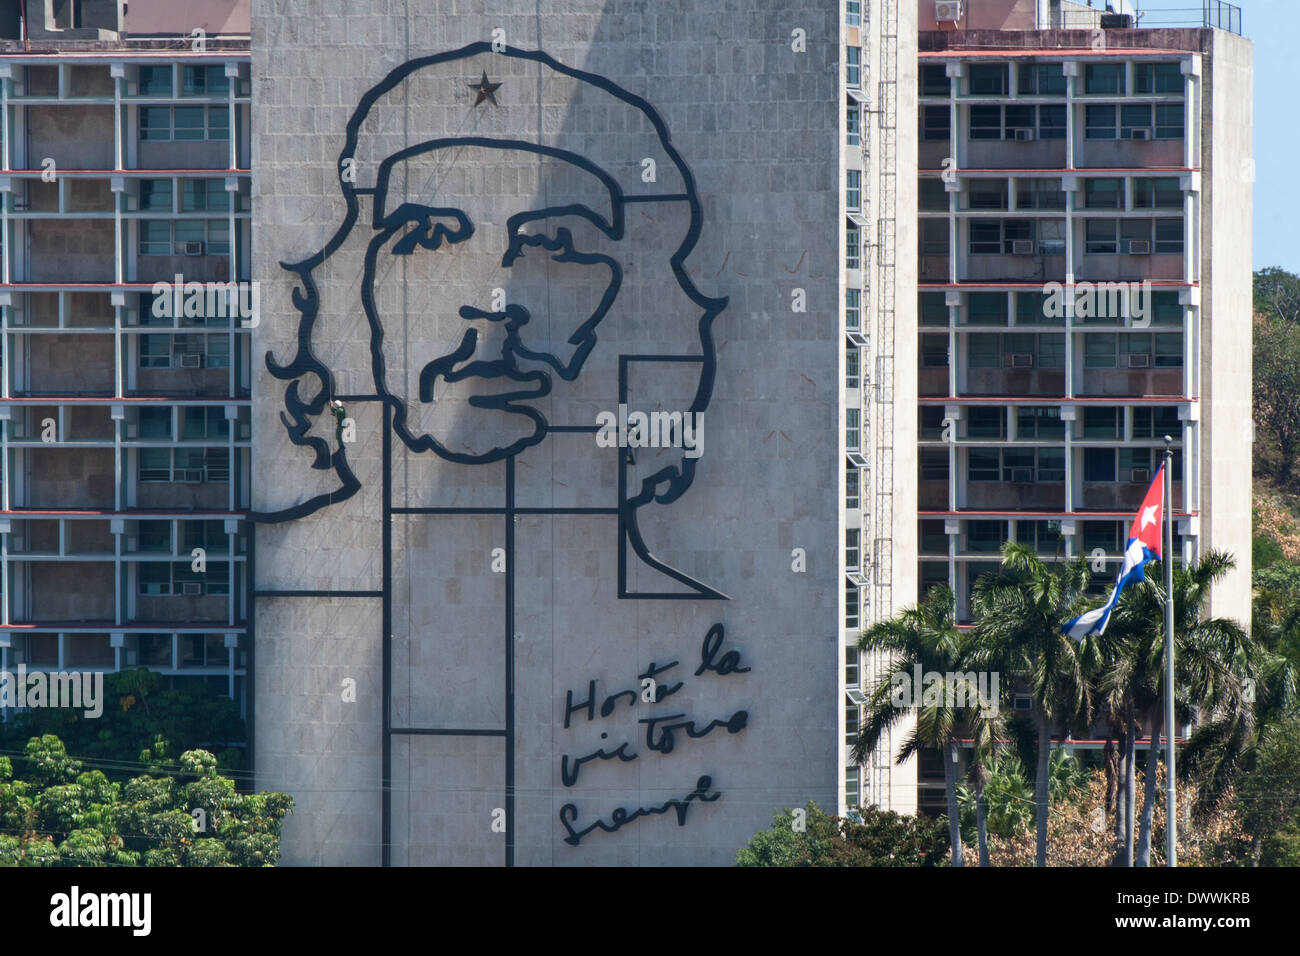 Che Guevara image being cleaned by workmen hanging by ropes in Plaza de la Revolución, Vedado, Havana, Cuba Stock Photo